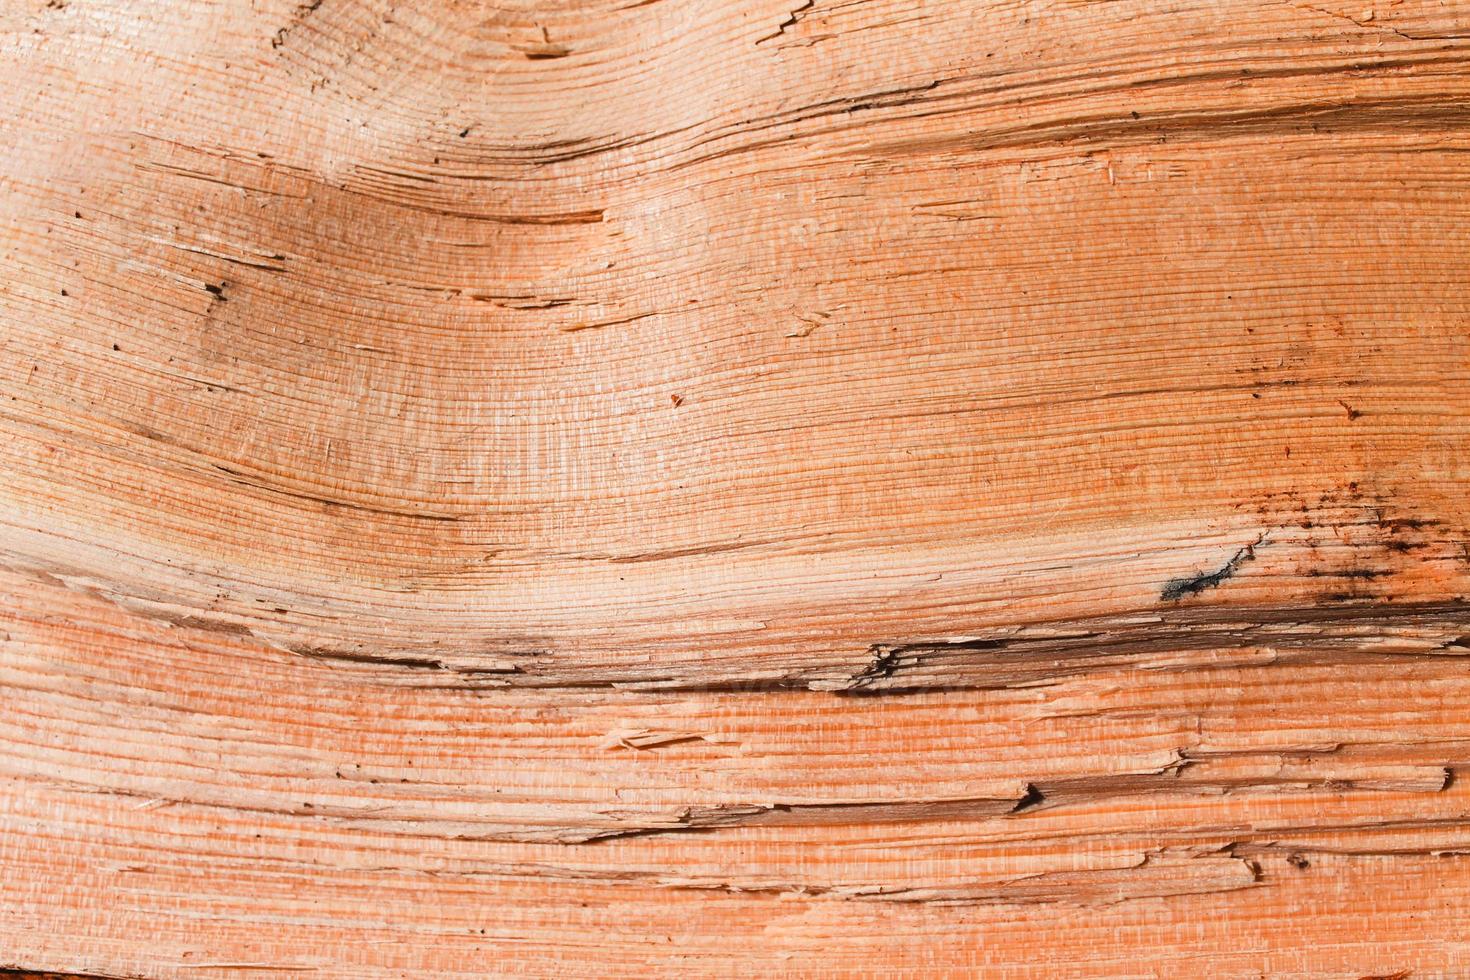 superfície da árvore closeup de fundo de madeira foto